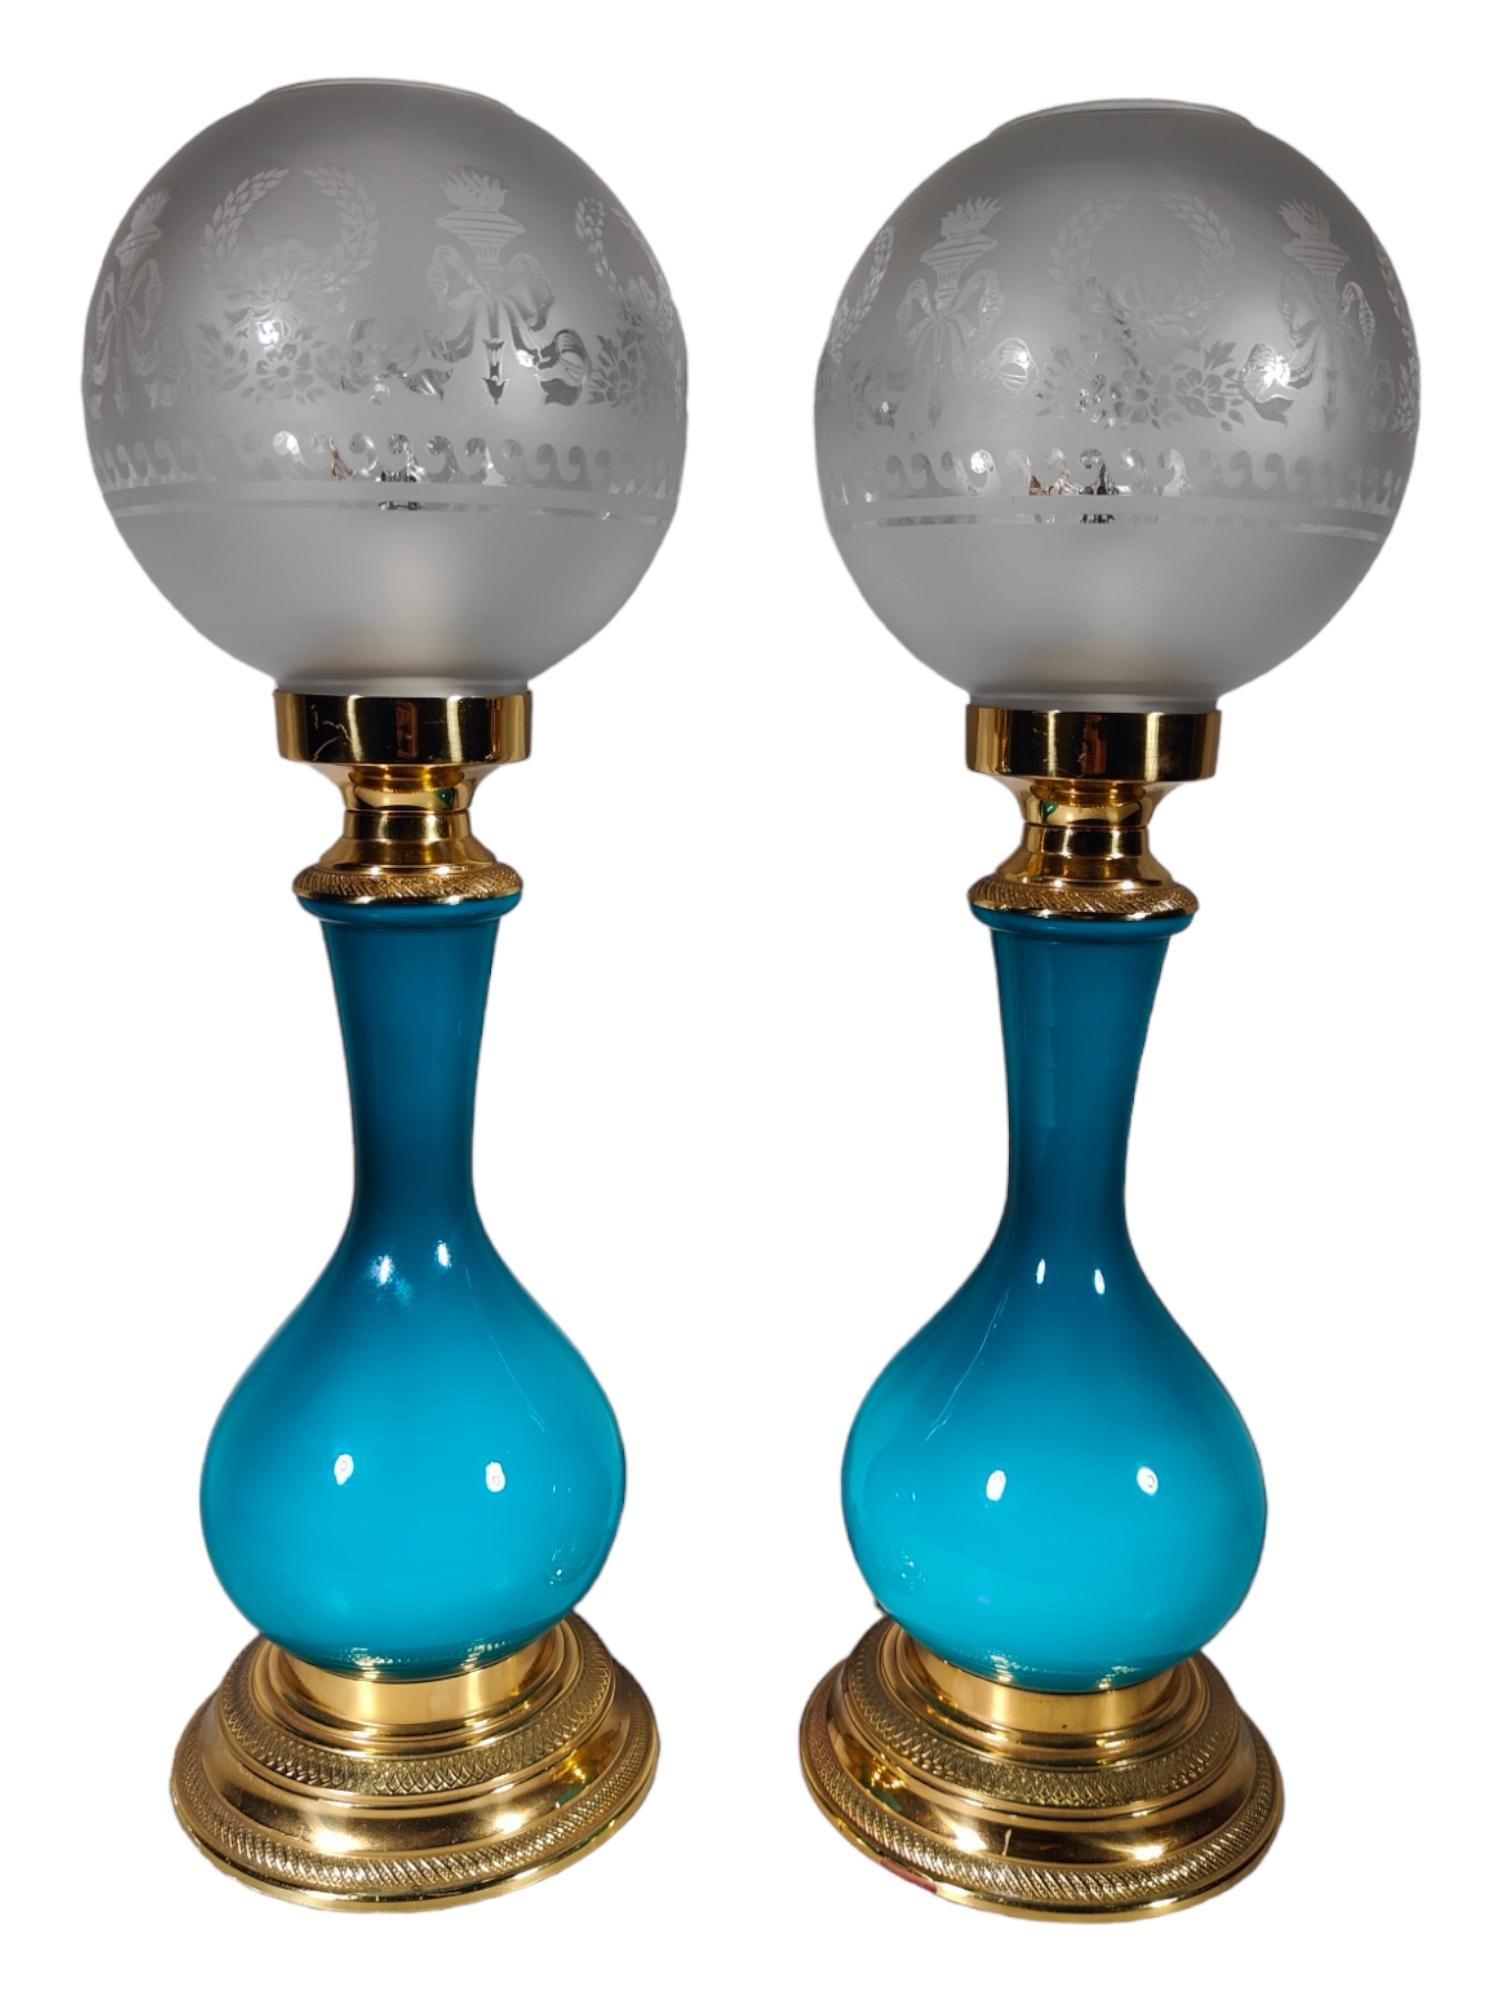 DEKORATIVE LAMPEN AUS DEM FRÜHEN 1900 IN BLAUEM GLAS UND GOLDENER BRONZE ABMESSUNGEN: 50 CM HEIGh